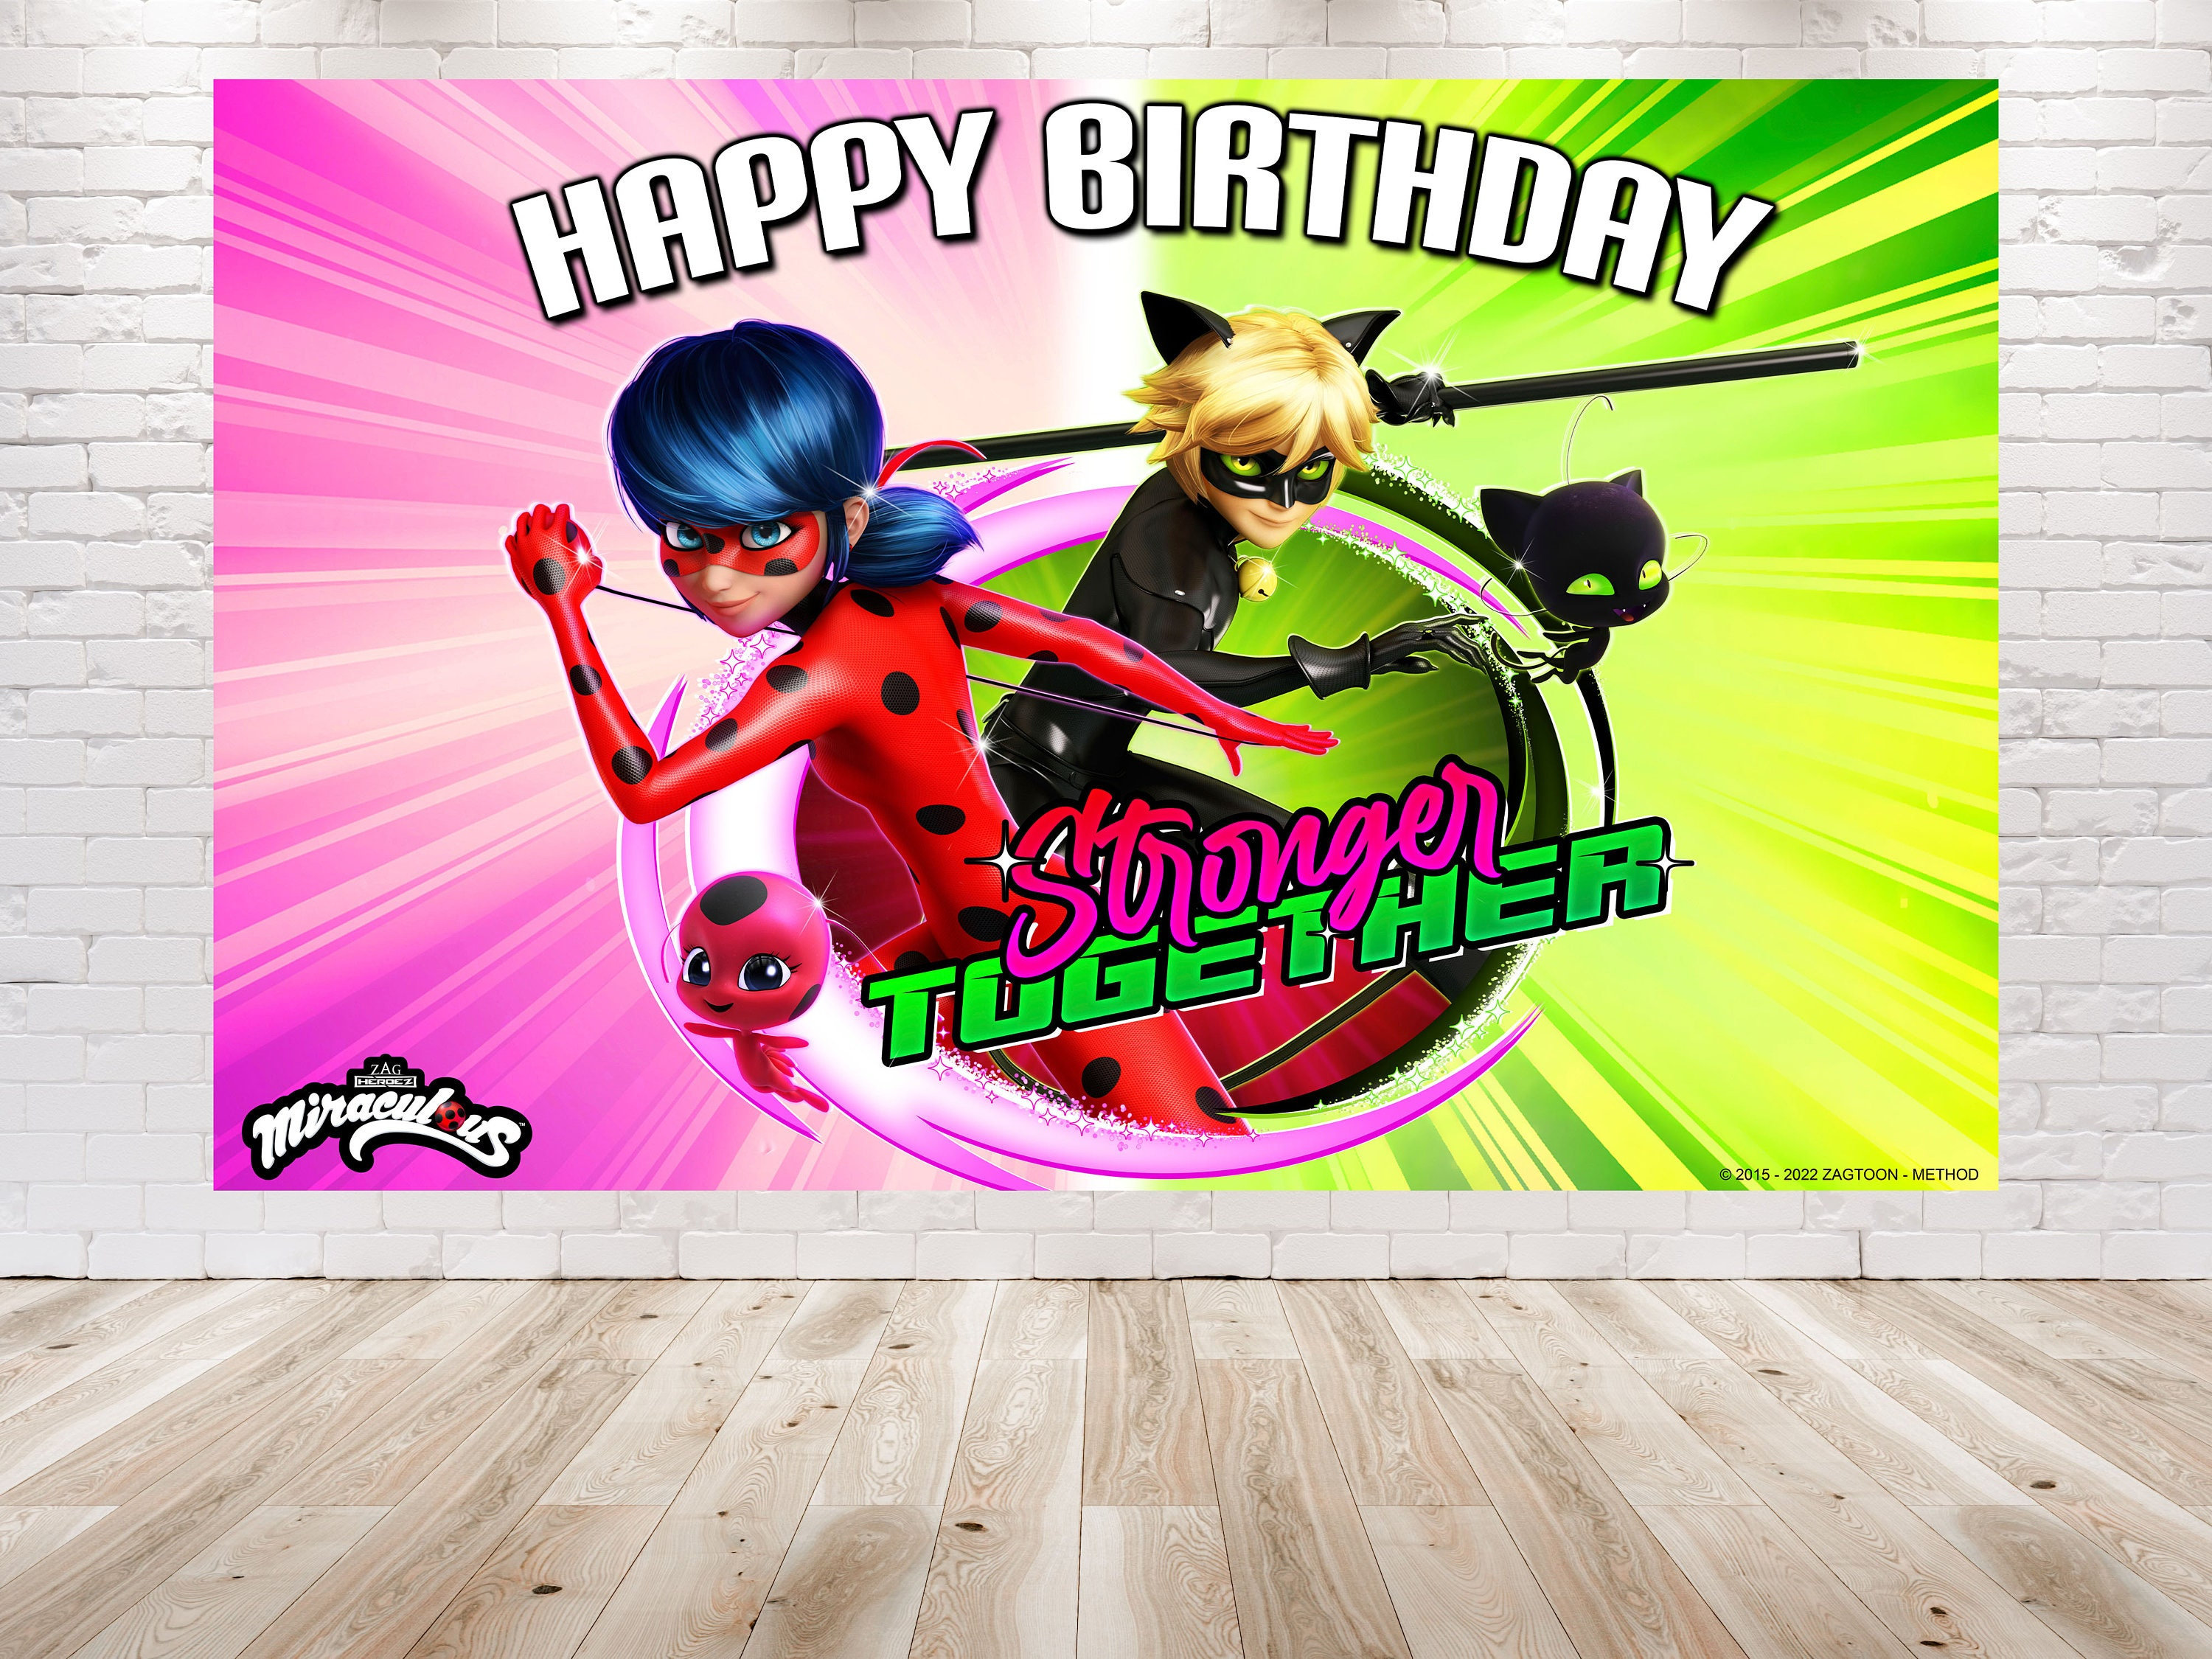 Invitación Cumpleaños milagroso de Ladybug y Cat Noir